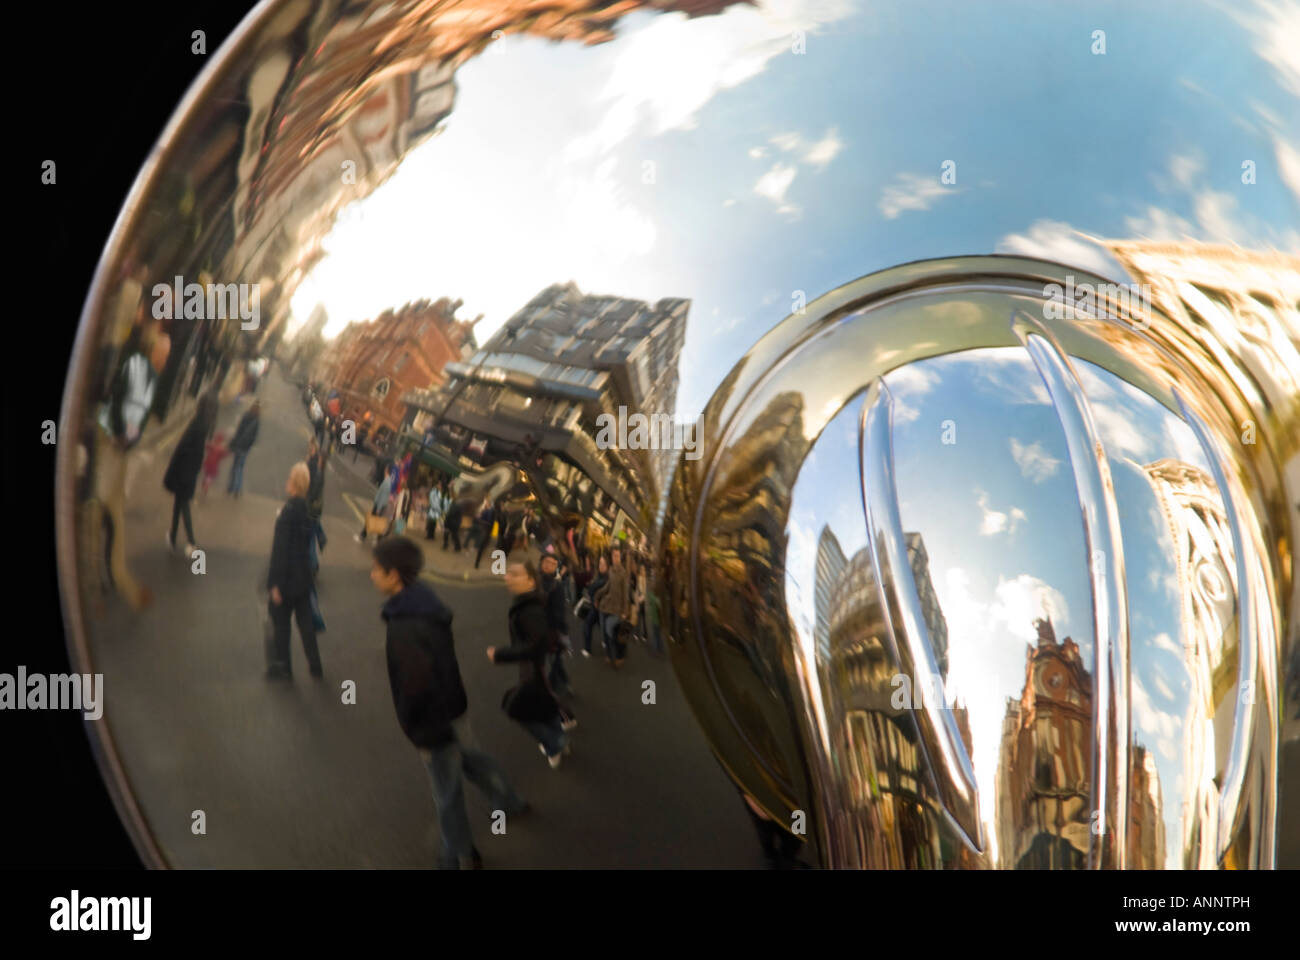 Horizontale Nahaufnahme von Reflexionen in der Glocke eine riesige Sousaphon aka marching Tuba, in einer marching Brass Band gespielt. Stockfoto